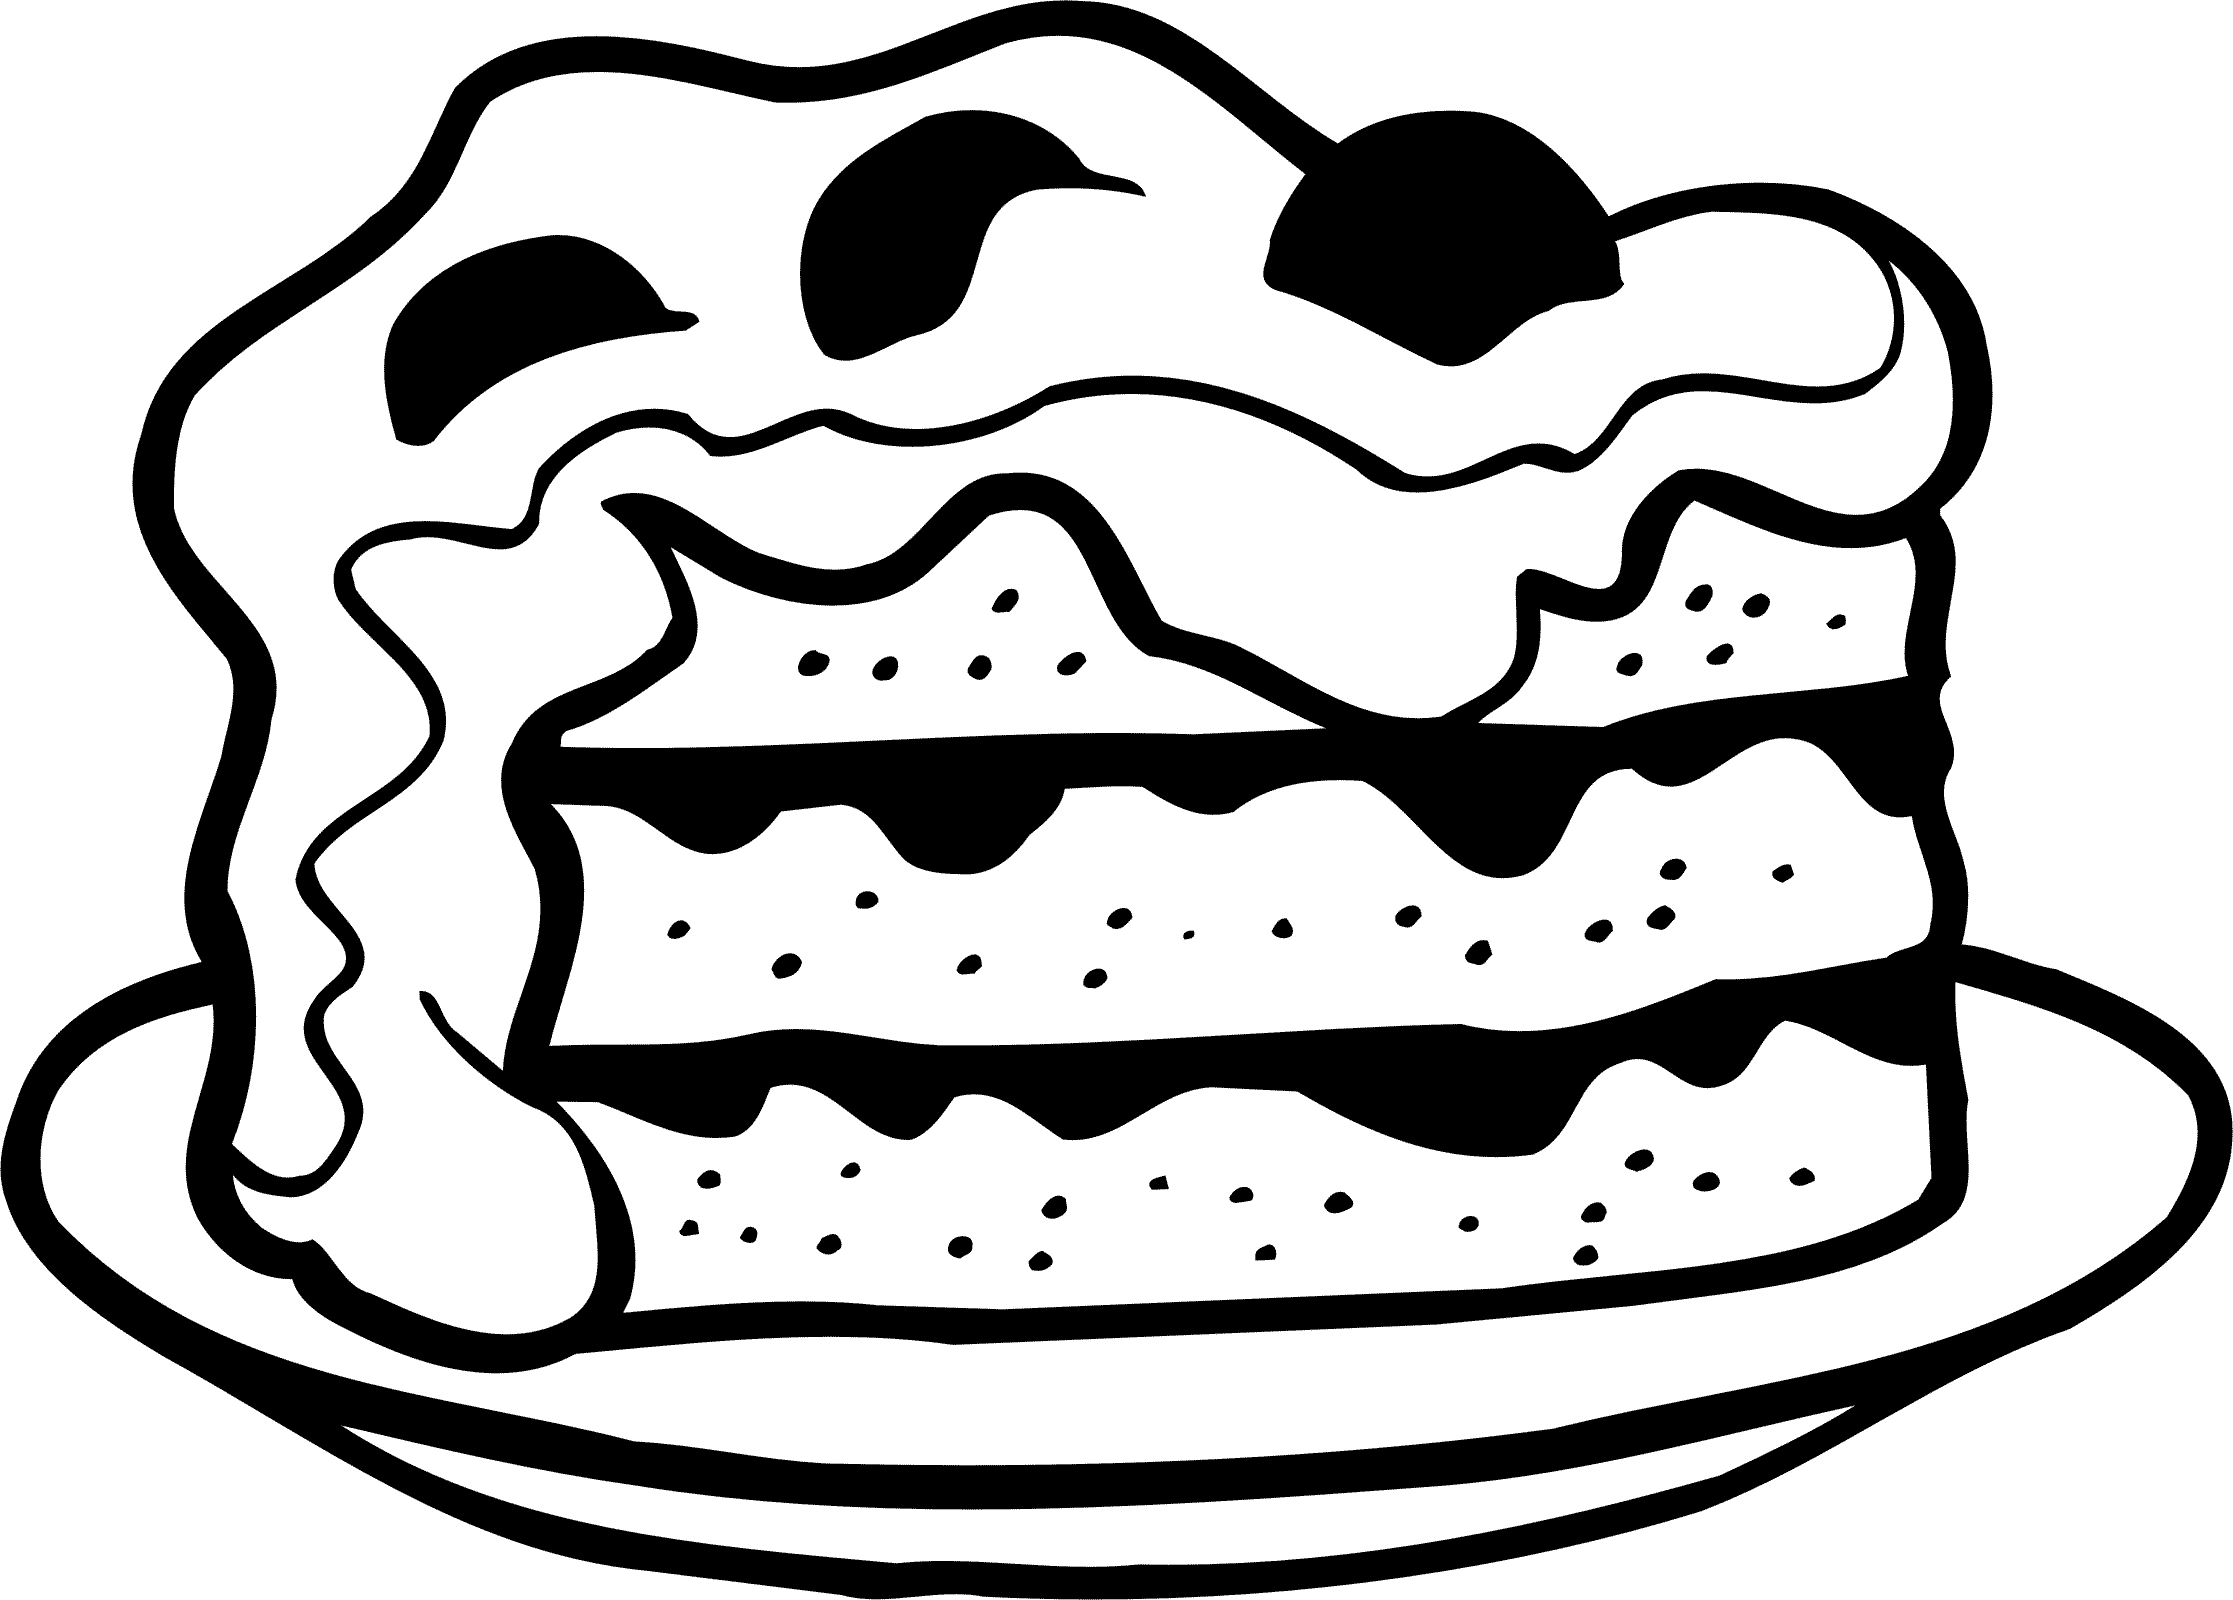 Раскраски Торты и пирожные  Большой кусок, торт, с кремом, клубничный, раскраска